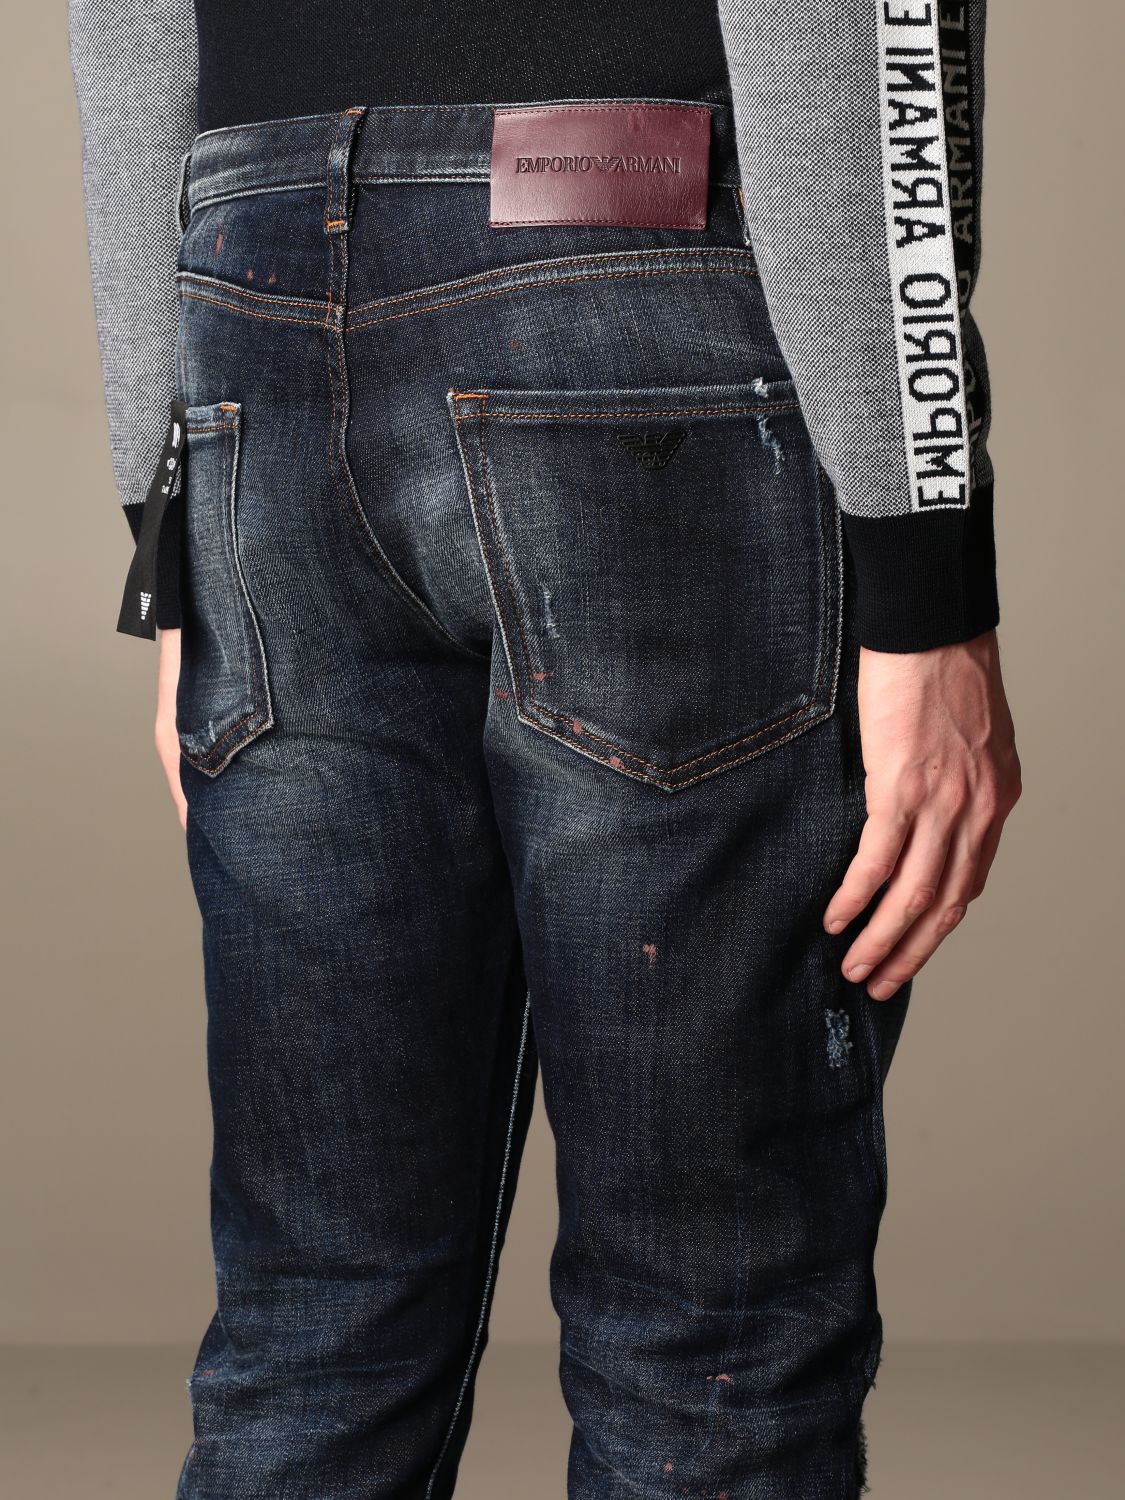 Emporio Armani Outlet: jeans in used denim - Denim | Emporio Armani